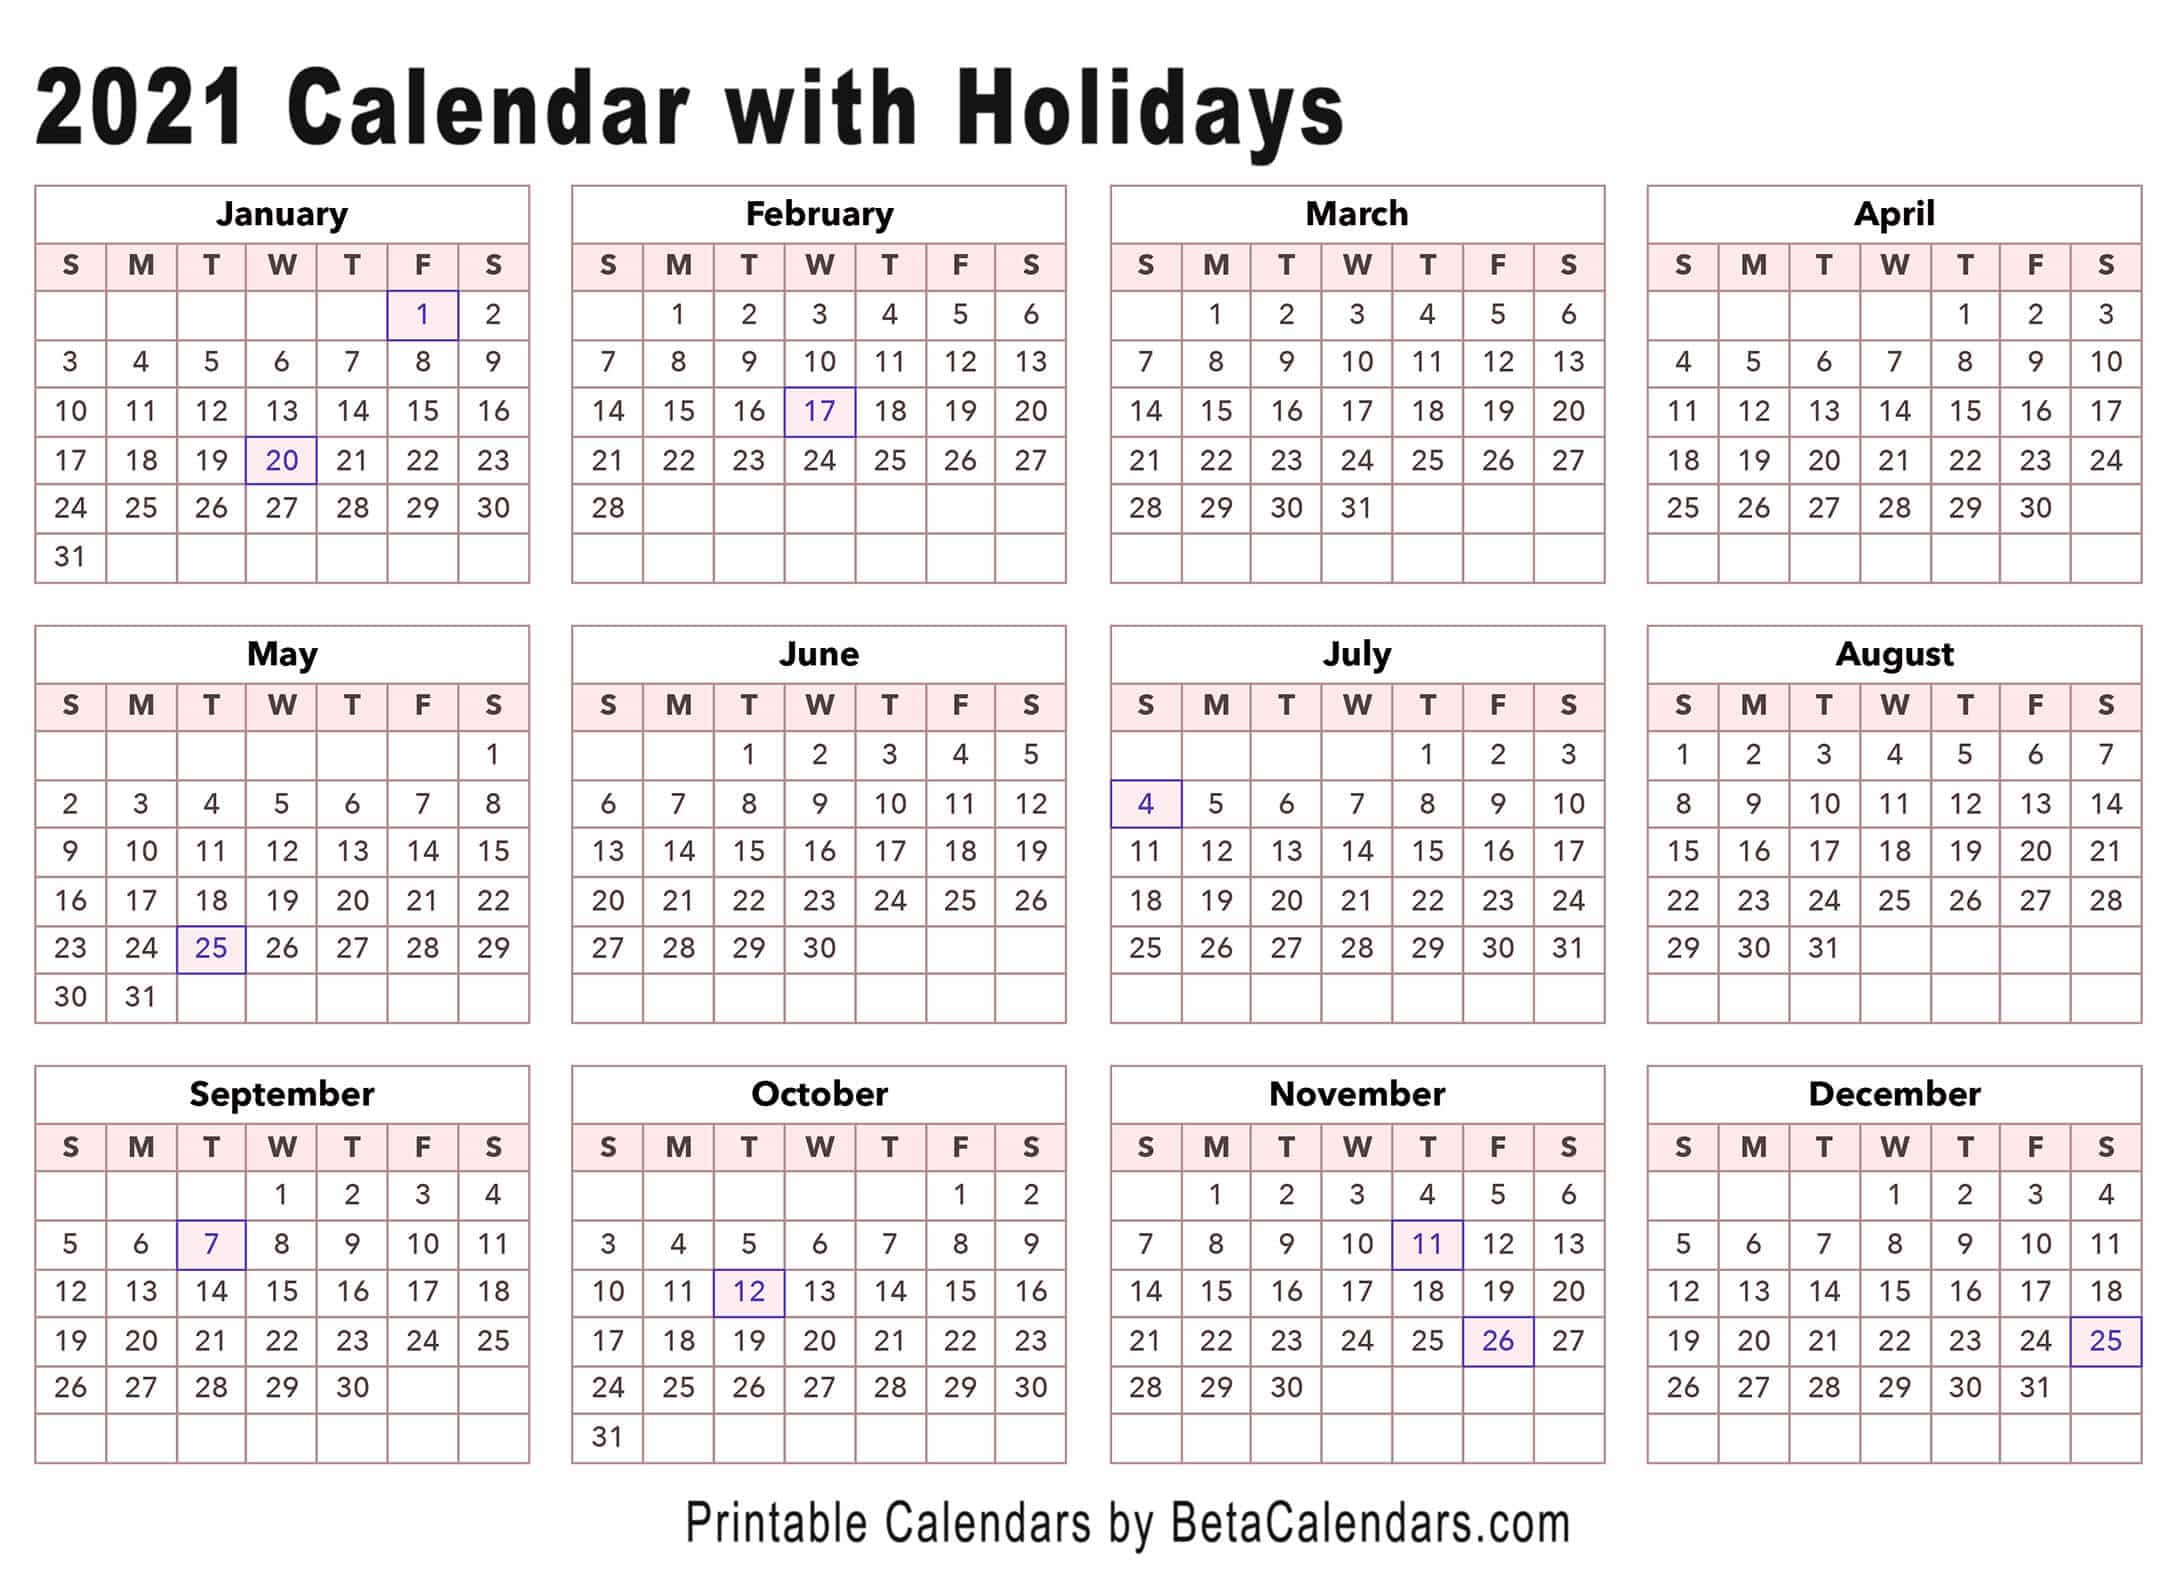 2021 Calendar Beta Calendars › open office calc calendar template. 2021 calendar beta calendars